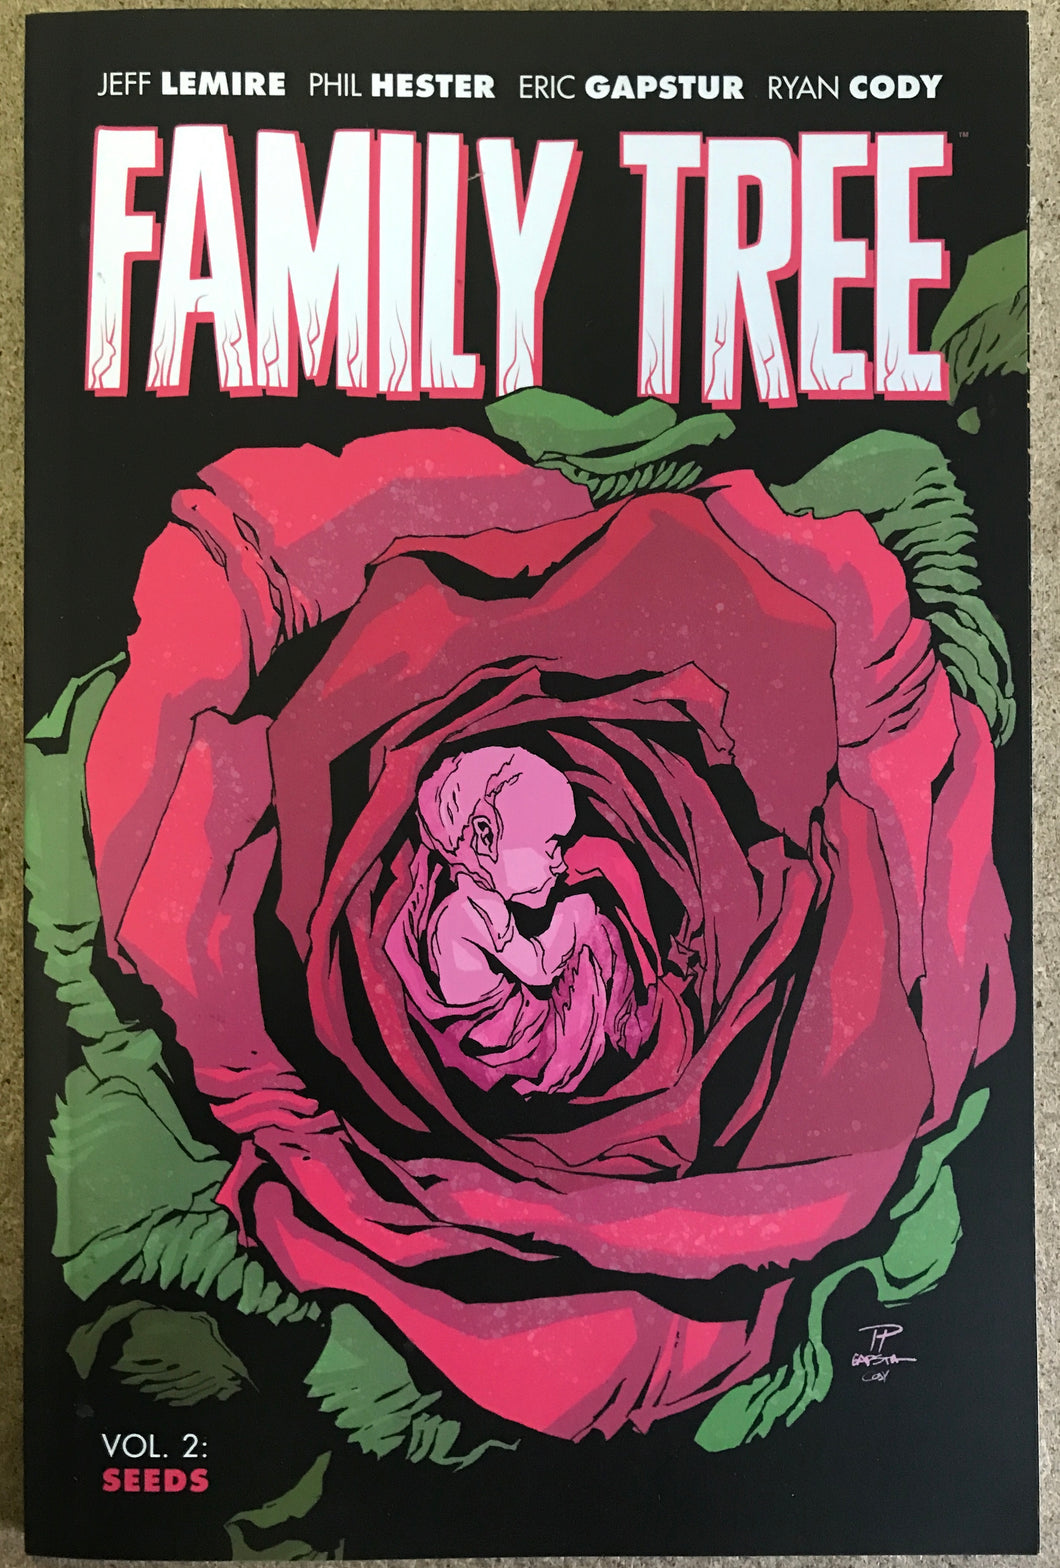 FAMILY TREE TP VOL 02